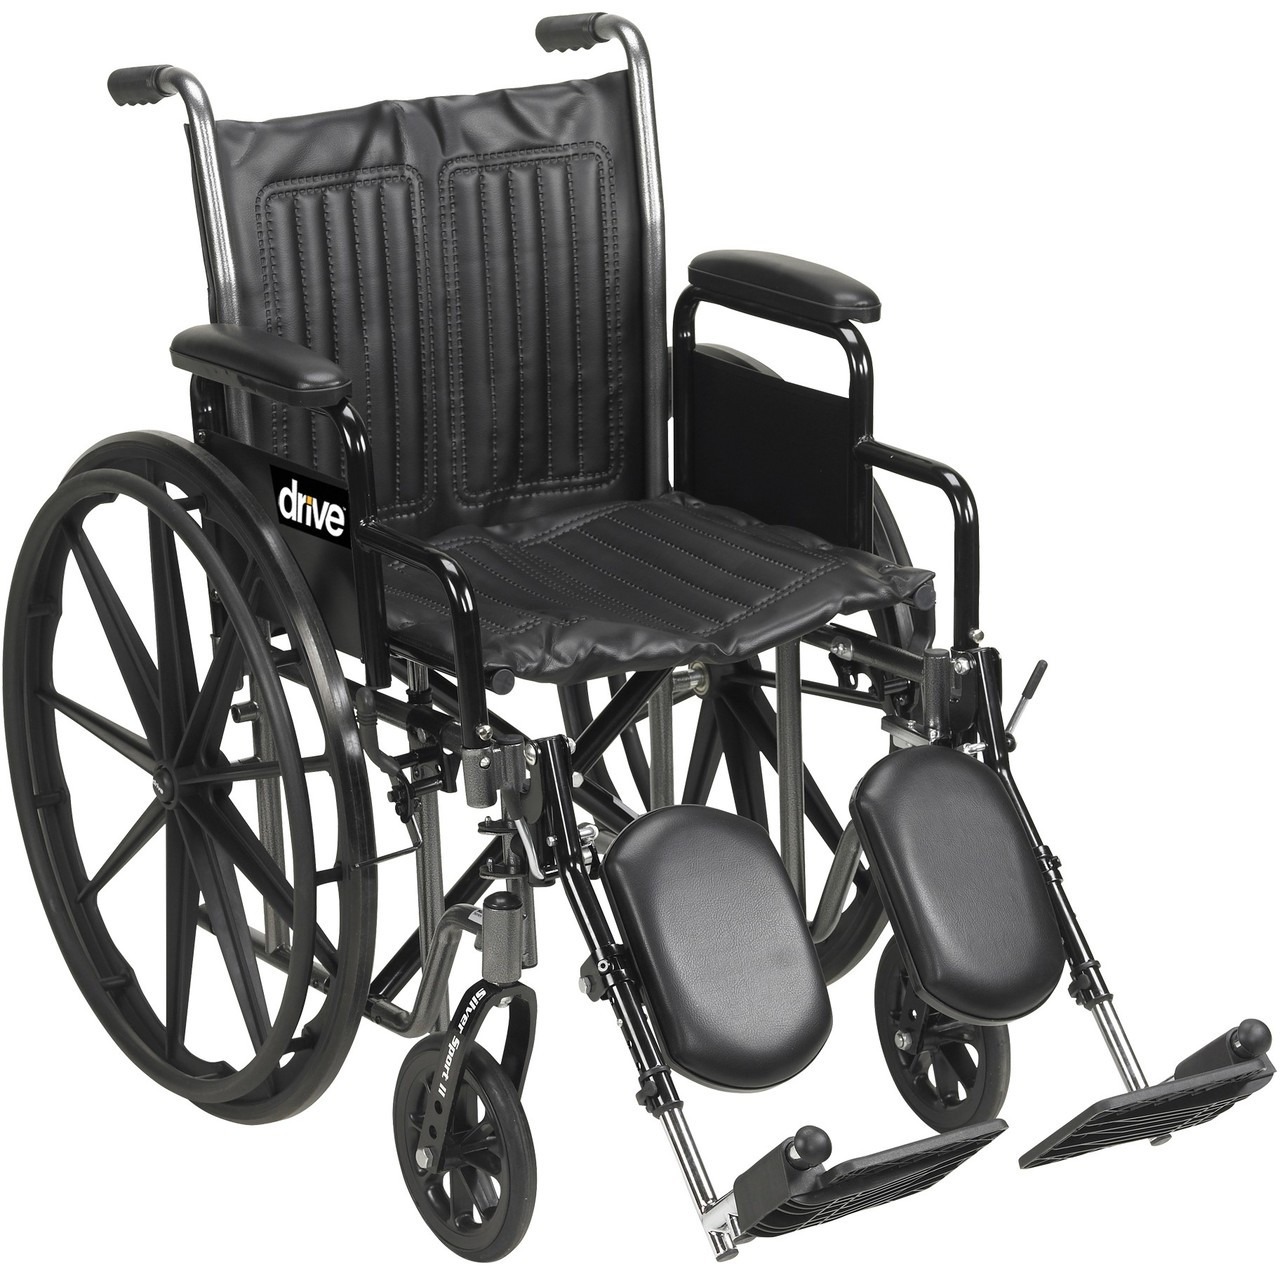 Drive SSP218DDA-SF Silver Sport 2 Wheelchair, Detachable Desk Arms, Swing away Footrests, 18" Seat (SSP218DDA-SF)